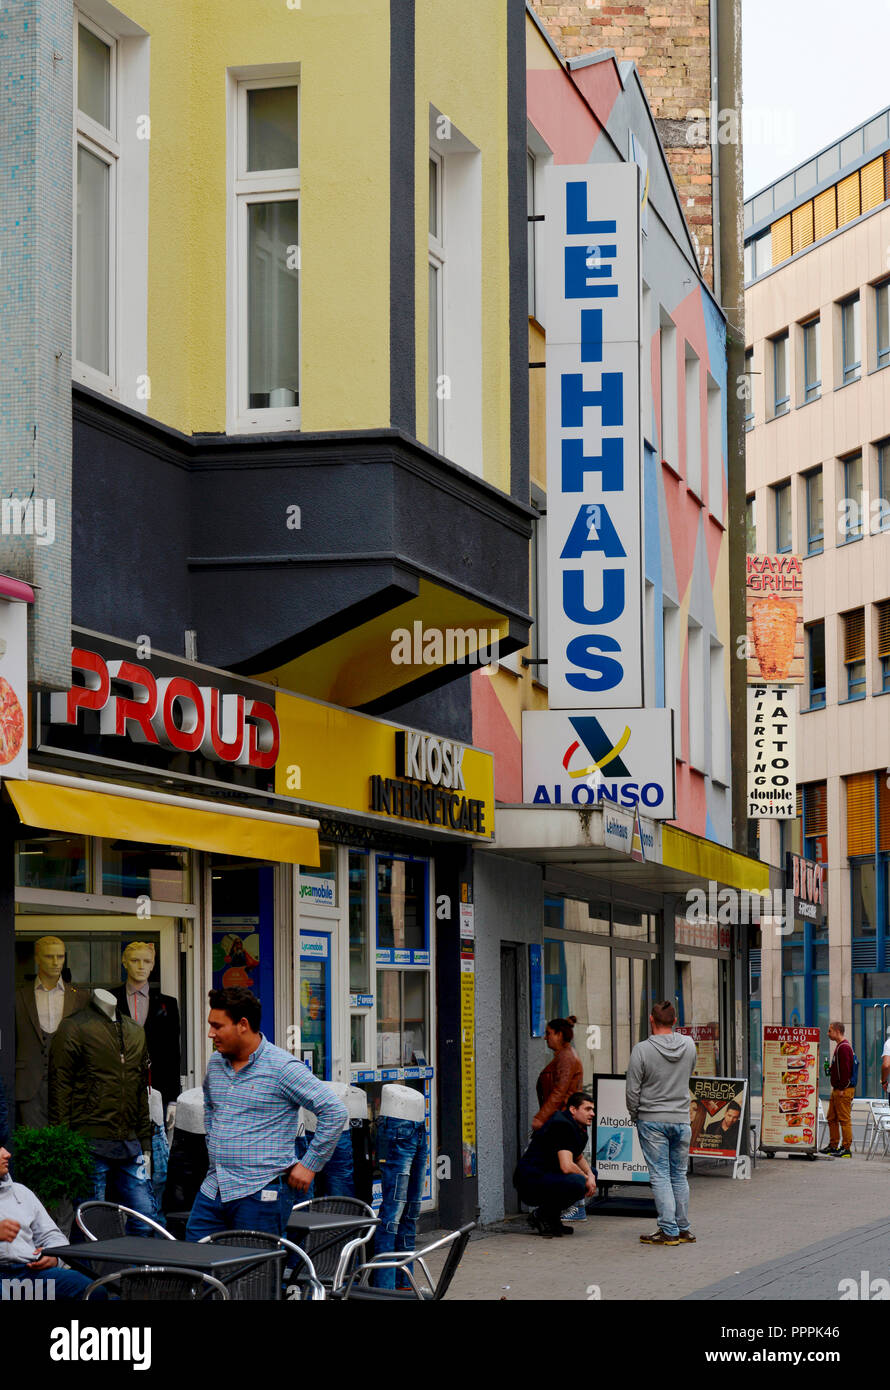 Leihhaus, Brueckstrasse, Dortmund, Nordrhein-Westfalen, Deutschland, Brückstrasse Stock Photo